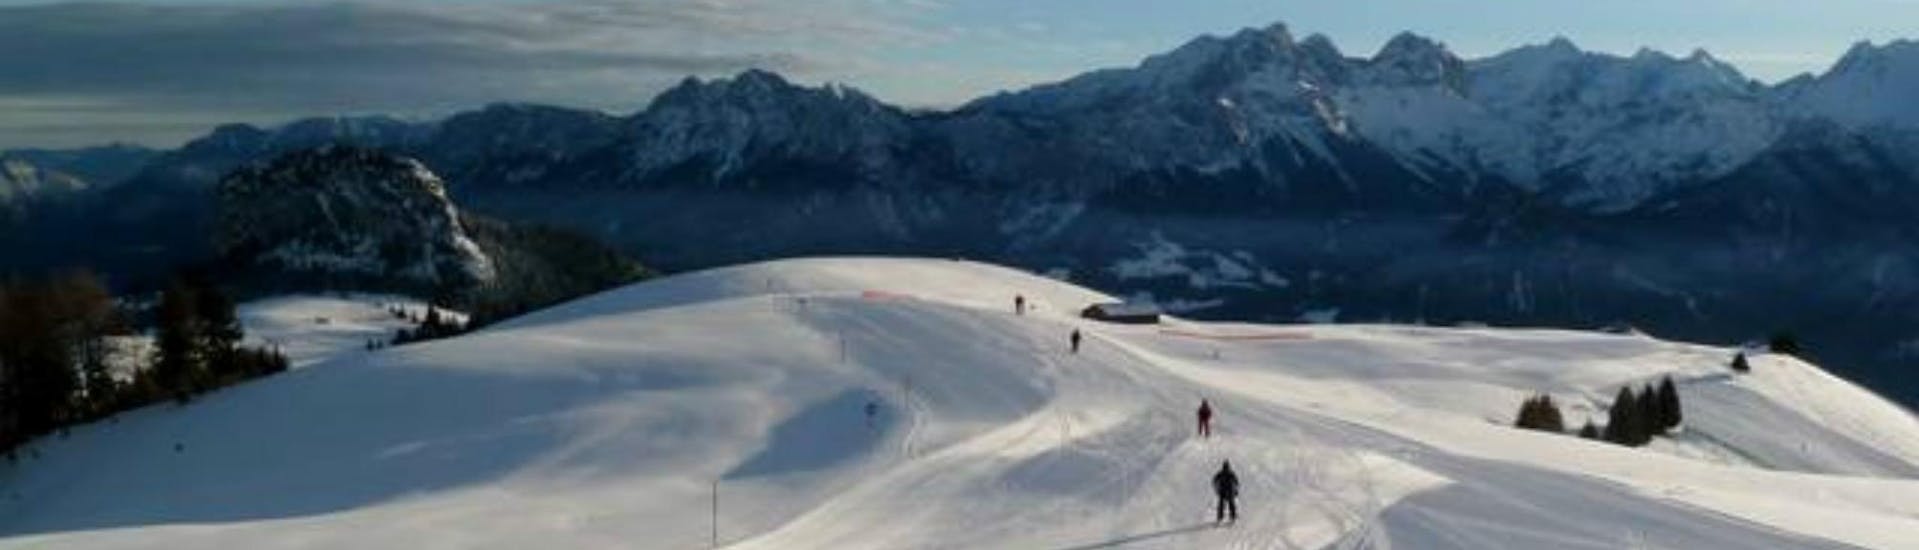 Adultes et enfants skiant dans la station de ski de Lofer.